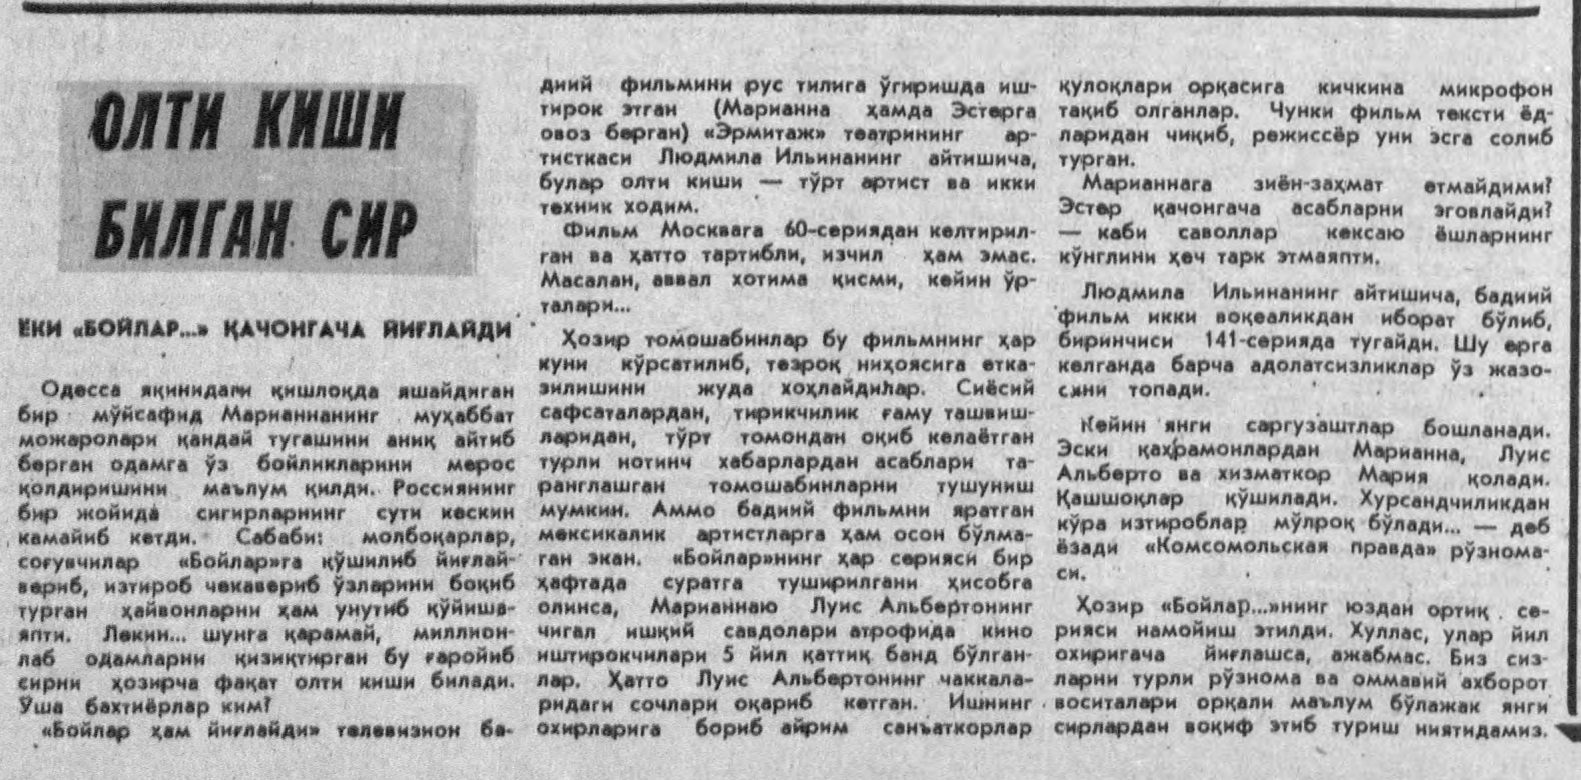 «Халқ сўзи» газетасининг 1992 йил 3 июнь сонидан лавҳа